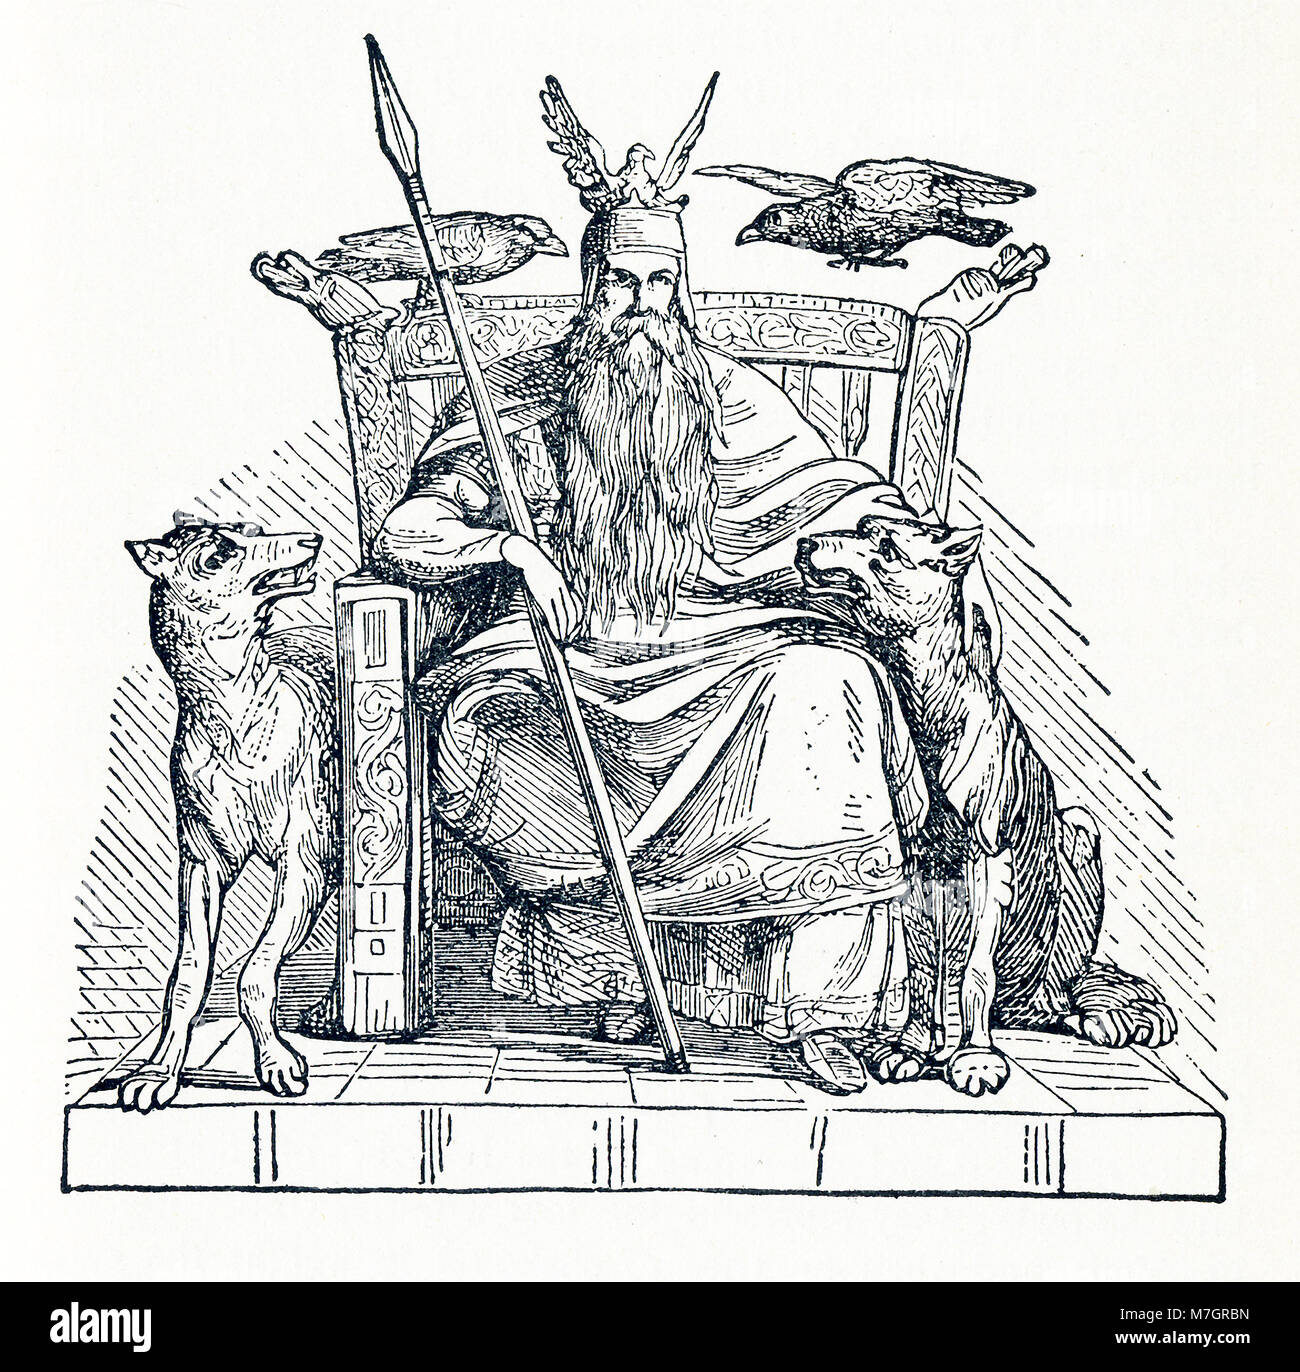 Selon la mythologie scandinave, Odin a été l'un des principaux dieux et le souverain d'Asgard (le pays ou le capital des dieux scandinaves). Ici Odin est assis sur son trône. Sur son épaule sont les deux corbeaux, Hugin (également Huginn - et qui signifie 'pensé') et Munin (également Muninn et la signification "mémoire"), qui lui sont associées. À sa droite et gauche en bas sont les deux loups Geri et Freki, (les deux signifiant 'greedy' ou un vorace'), qui ont été également dit de l'accompagner. Banque D'Images